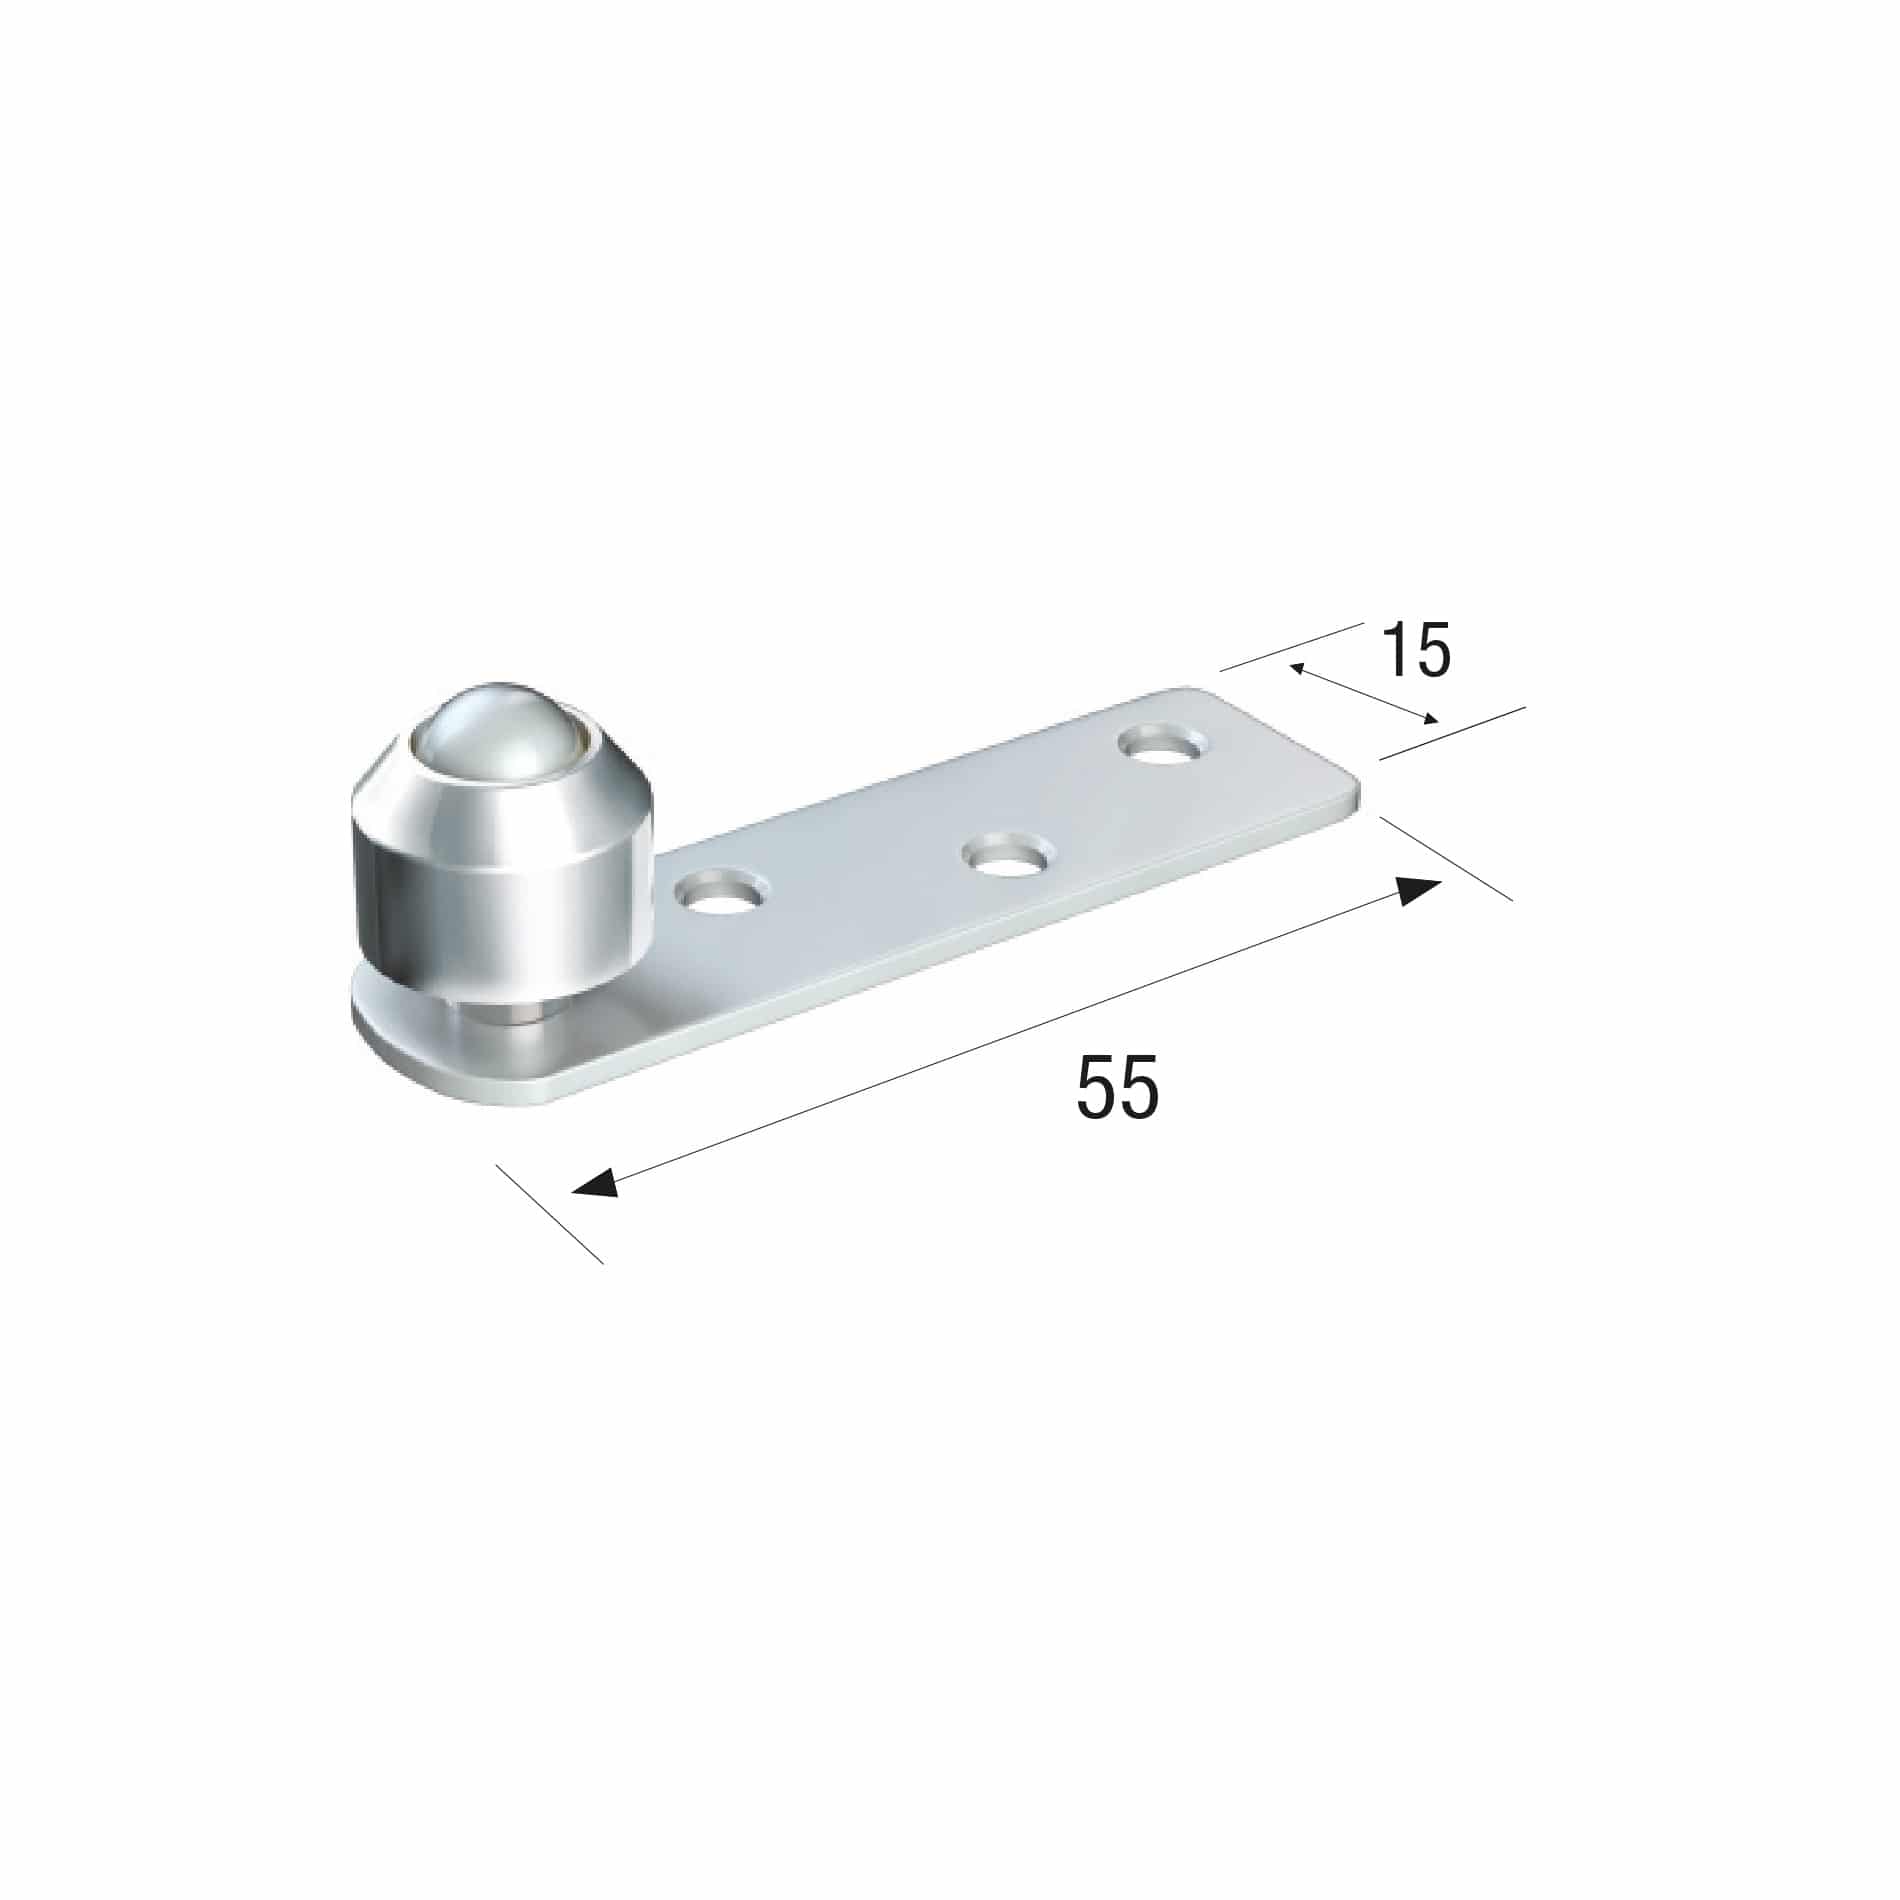 Series 20 14mm Diameter Brass Bottom Guide Roller, Offset On Flat Steel Plate